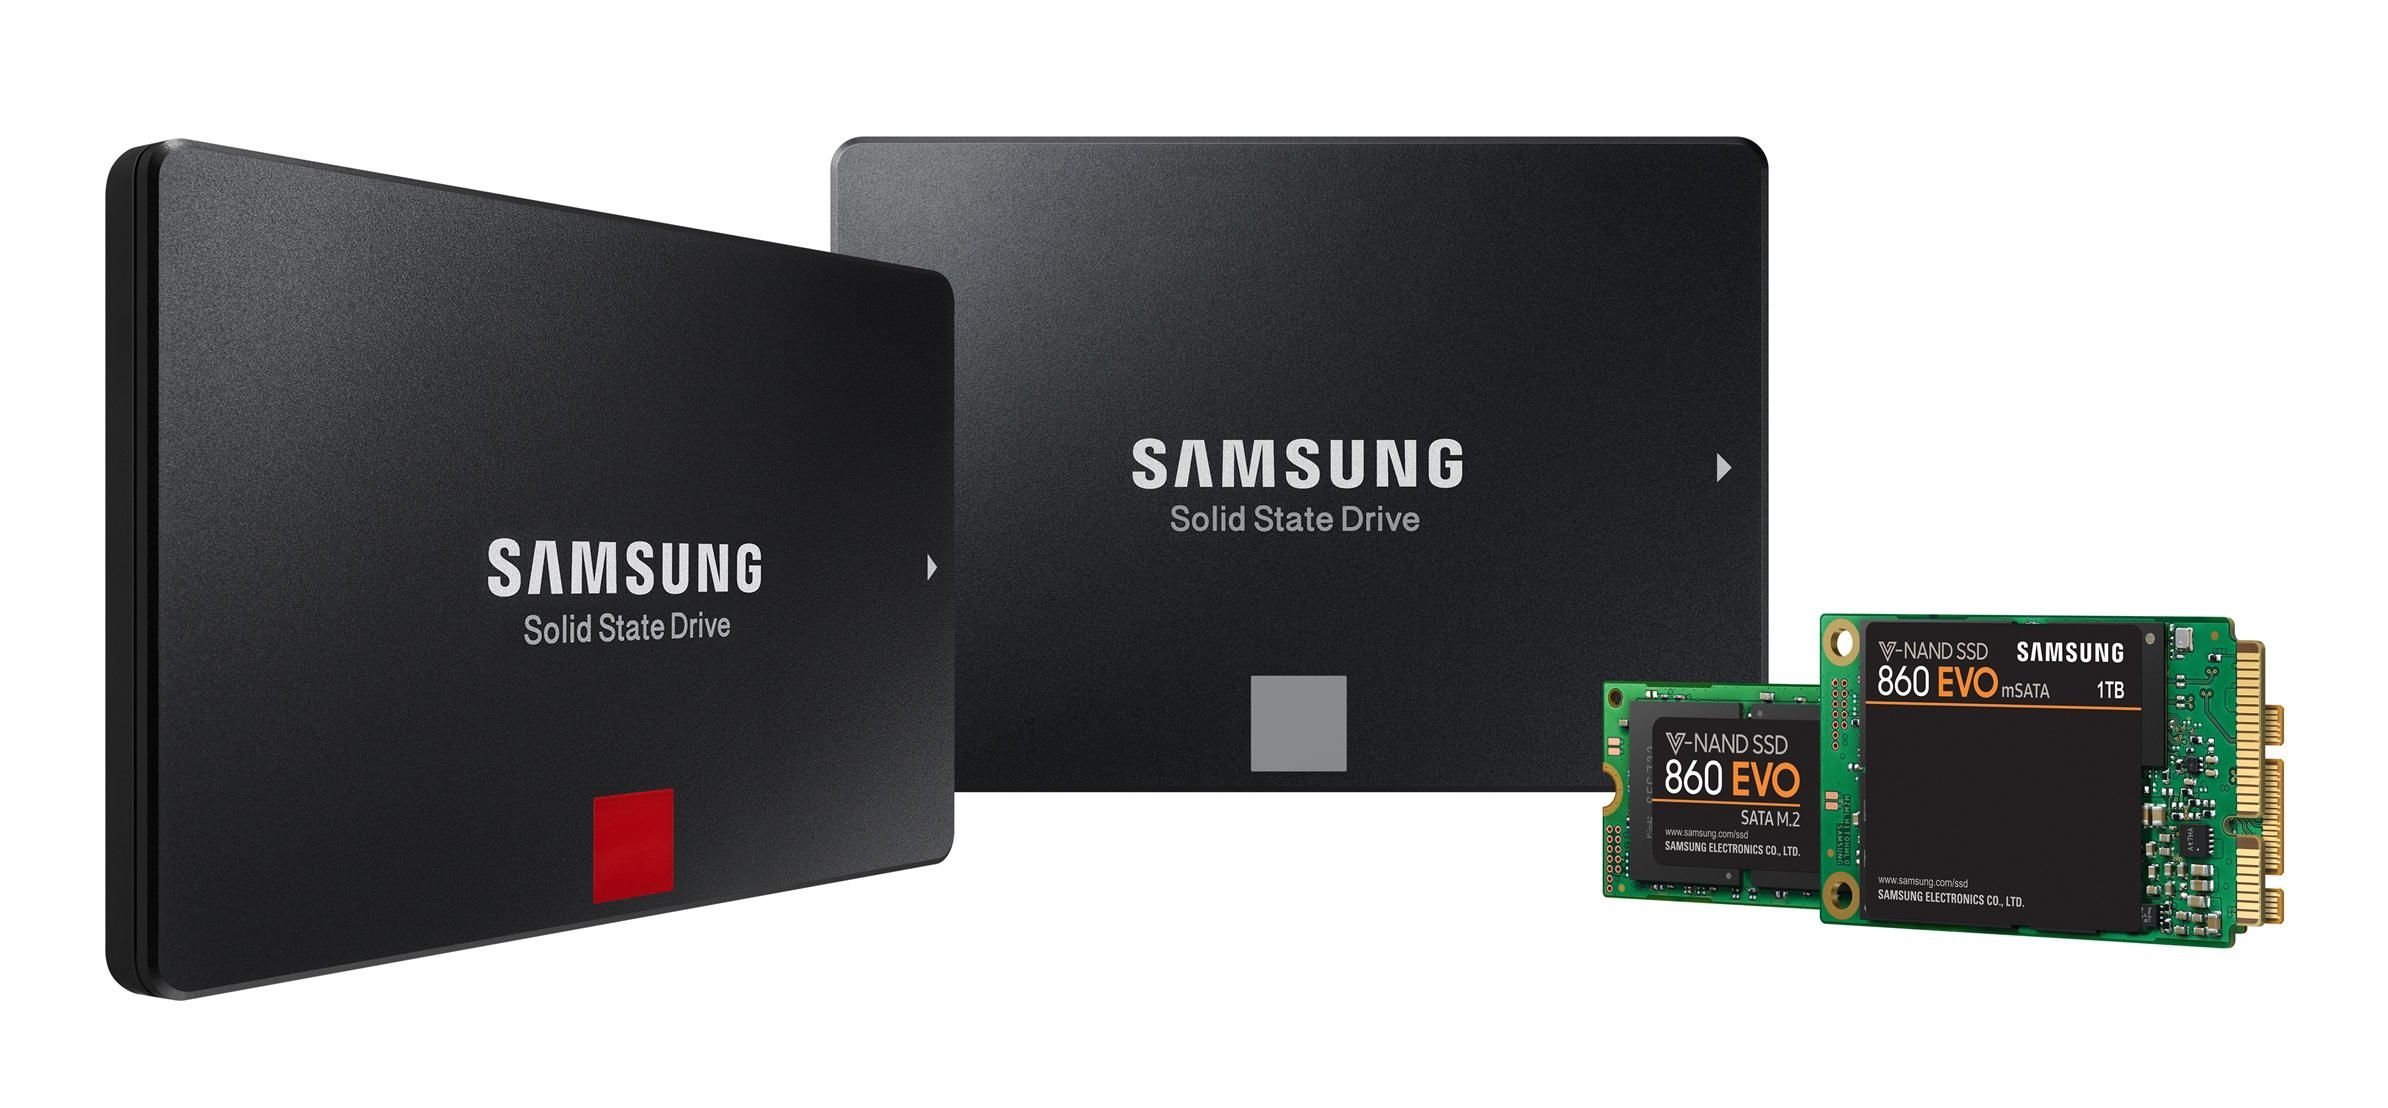 Η Samsung ανακοίνωσε τις νέες σειρές solid state drive, 860 Evo και 860 Pro